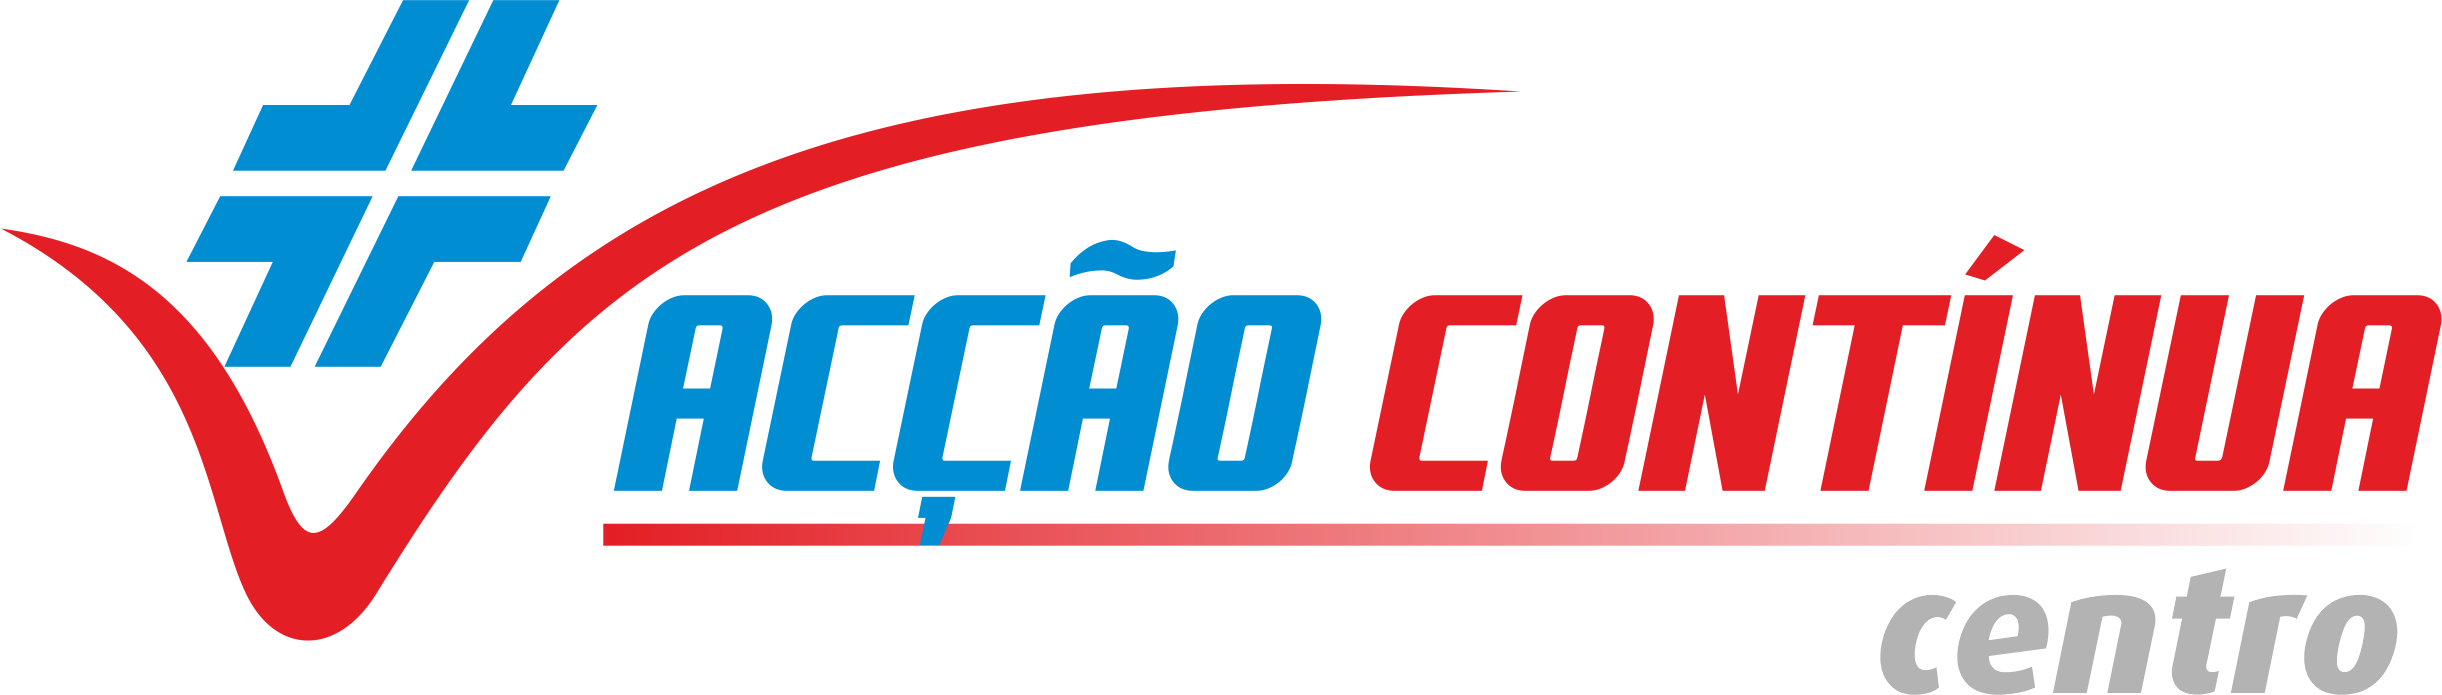 logotipo Acção Contínua Centro